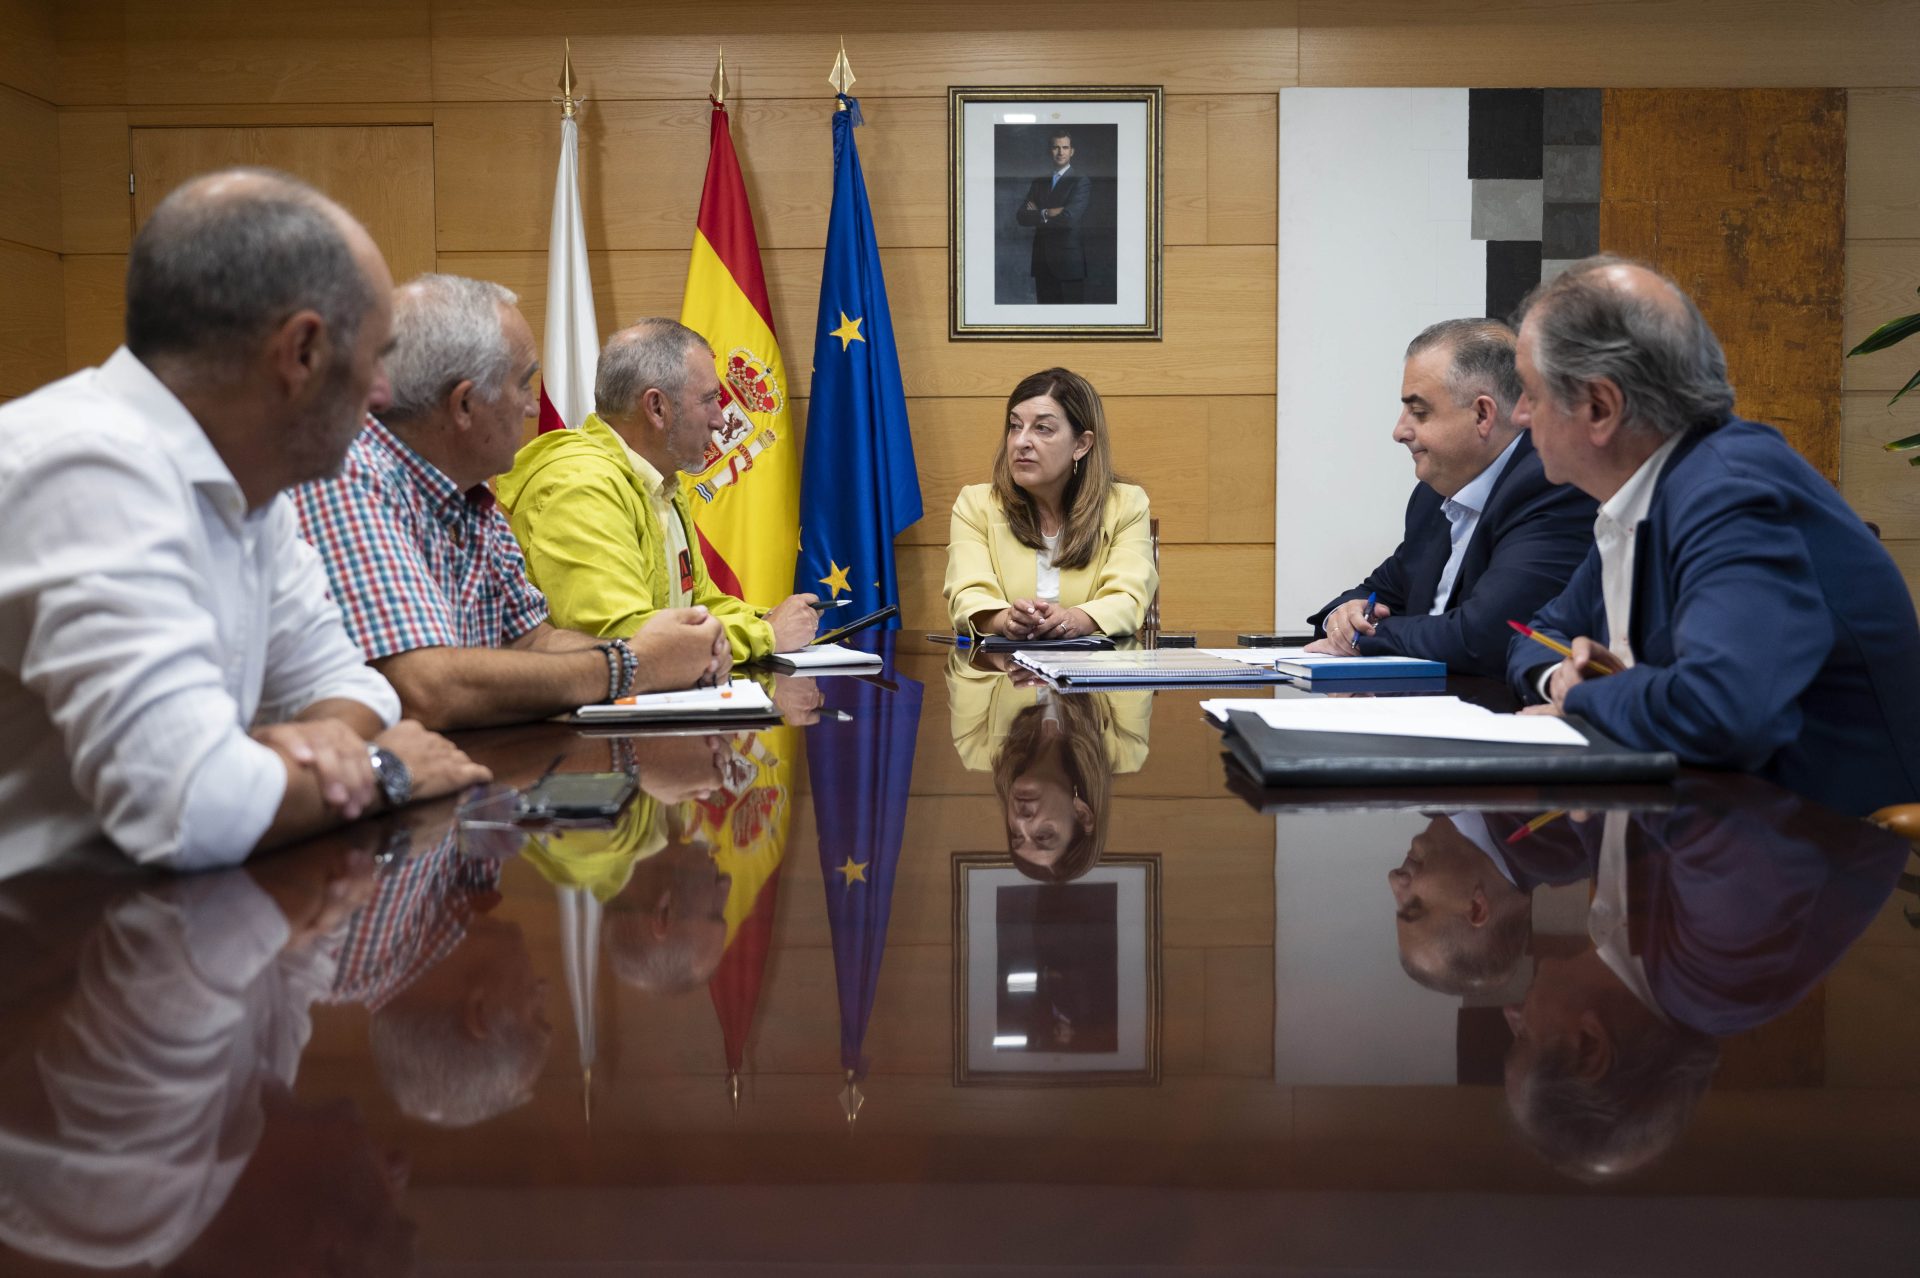 La presidenta de Cantabria, María José Sáenz de Buruaga, mantiene un encuentro con representantes de la Asociación de Maltratados por la Administración (AMA), en Santander. EFE/ Pedro Puente Hoyos